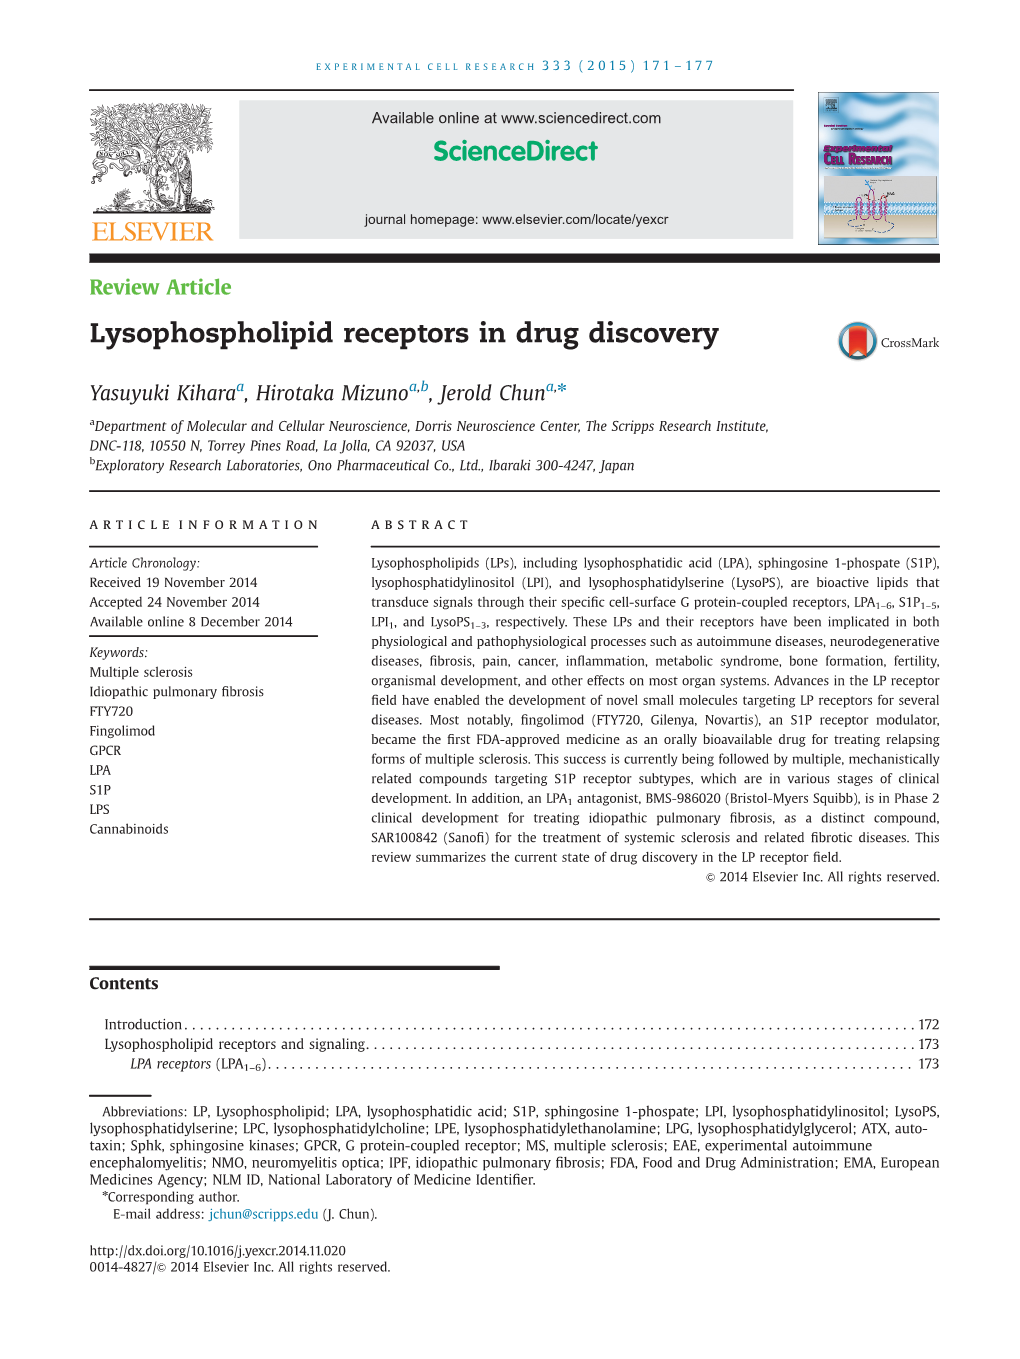 Lysophospholipid Receptors in Drug Discovery